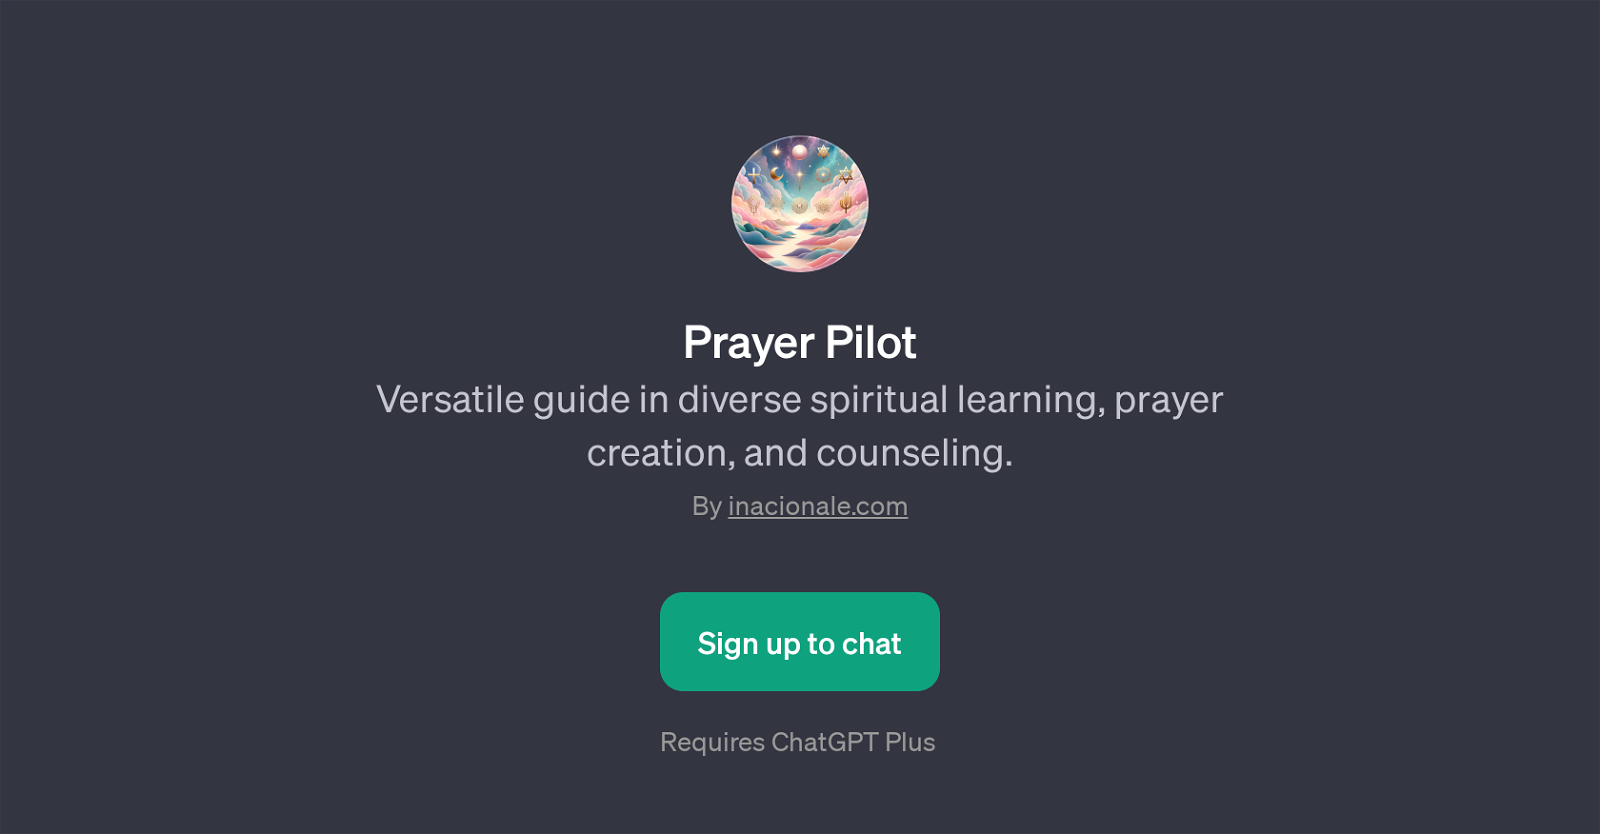 Prayer Pilot website